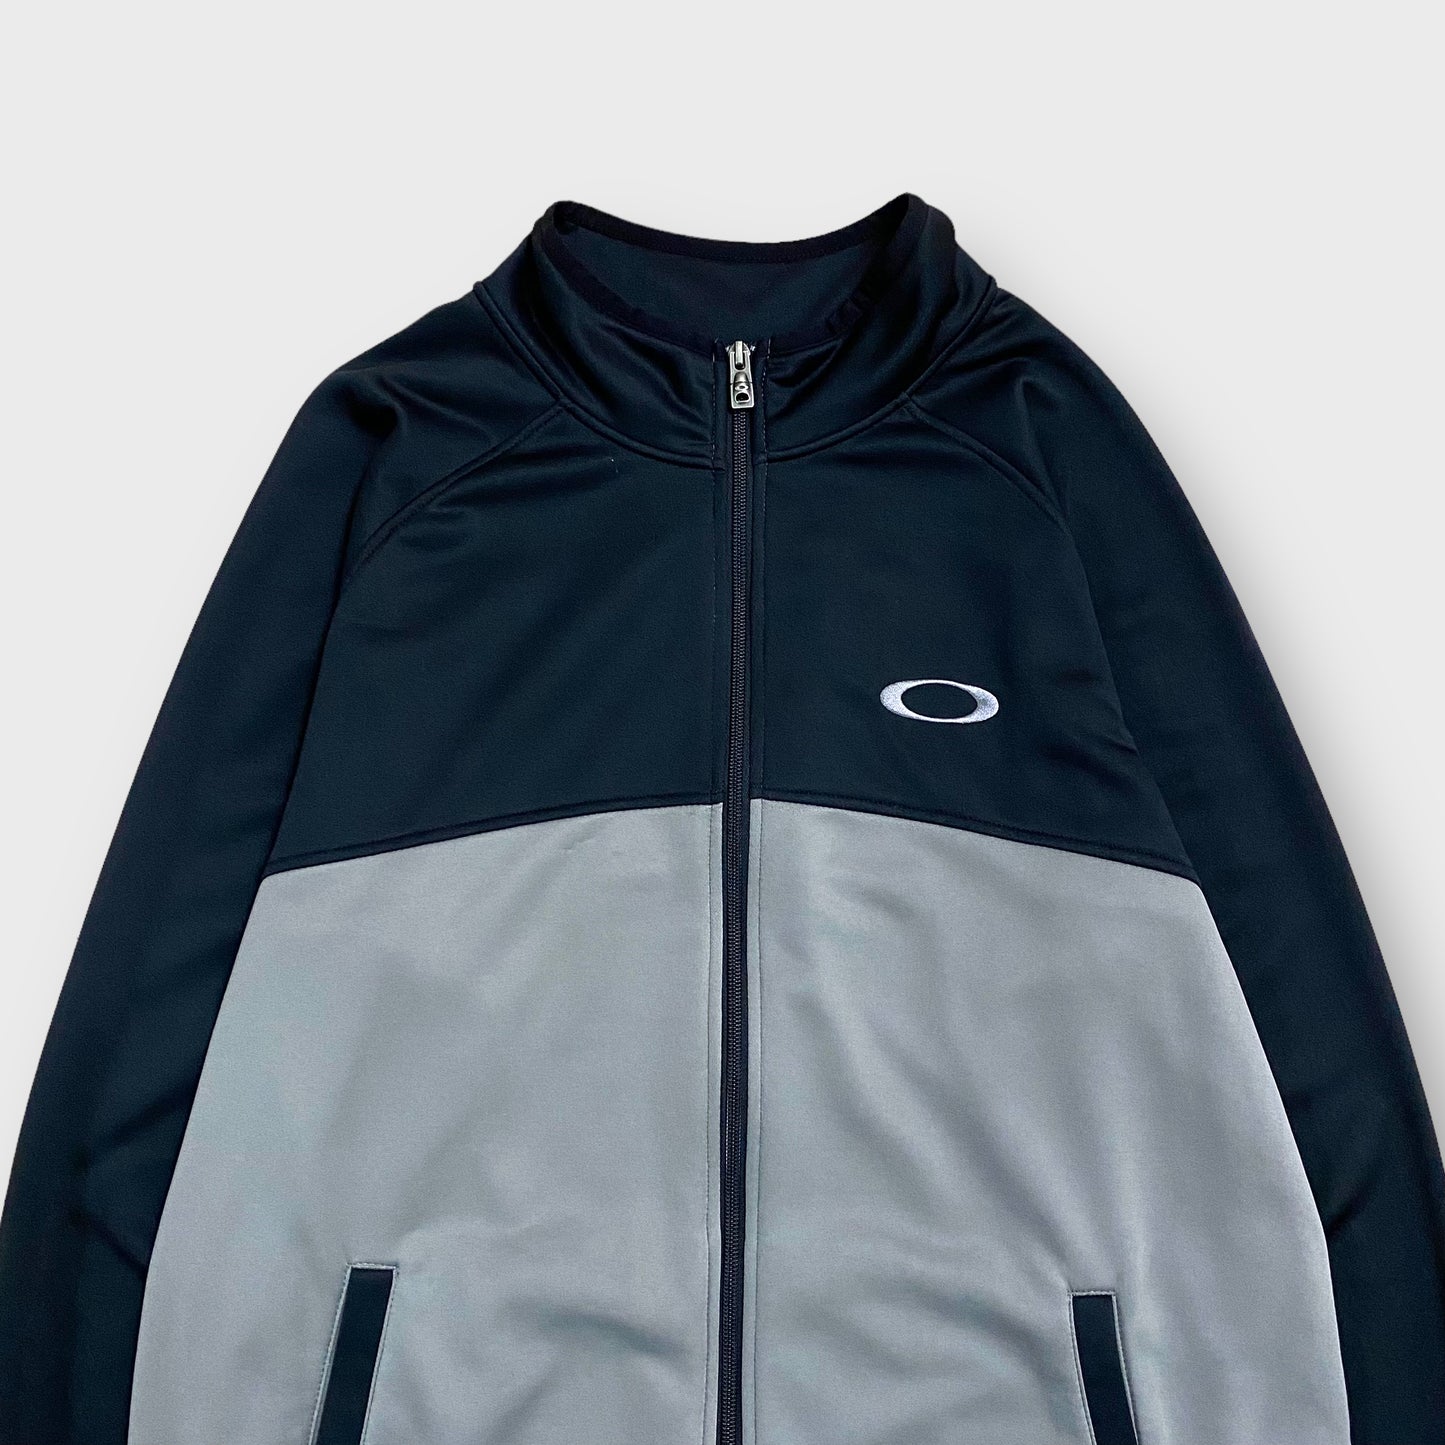 00's "OAKLEY" Track jacket